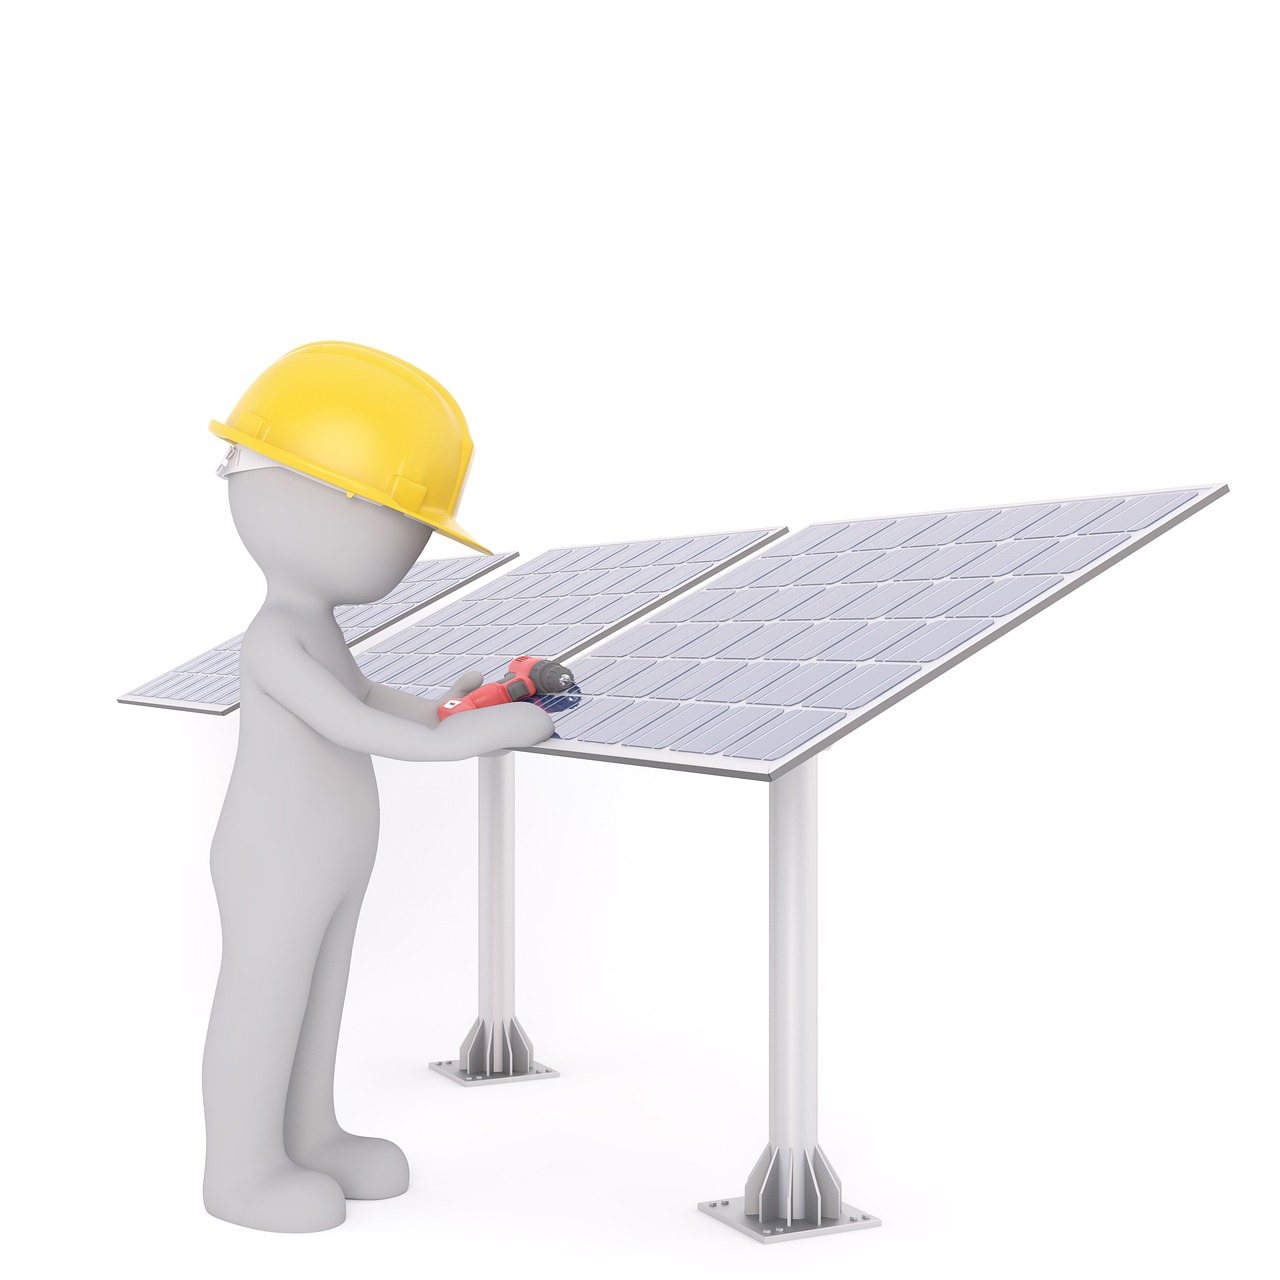 Comment choisir le support idéal pour des panneaux solaires installés au sol ?